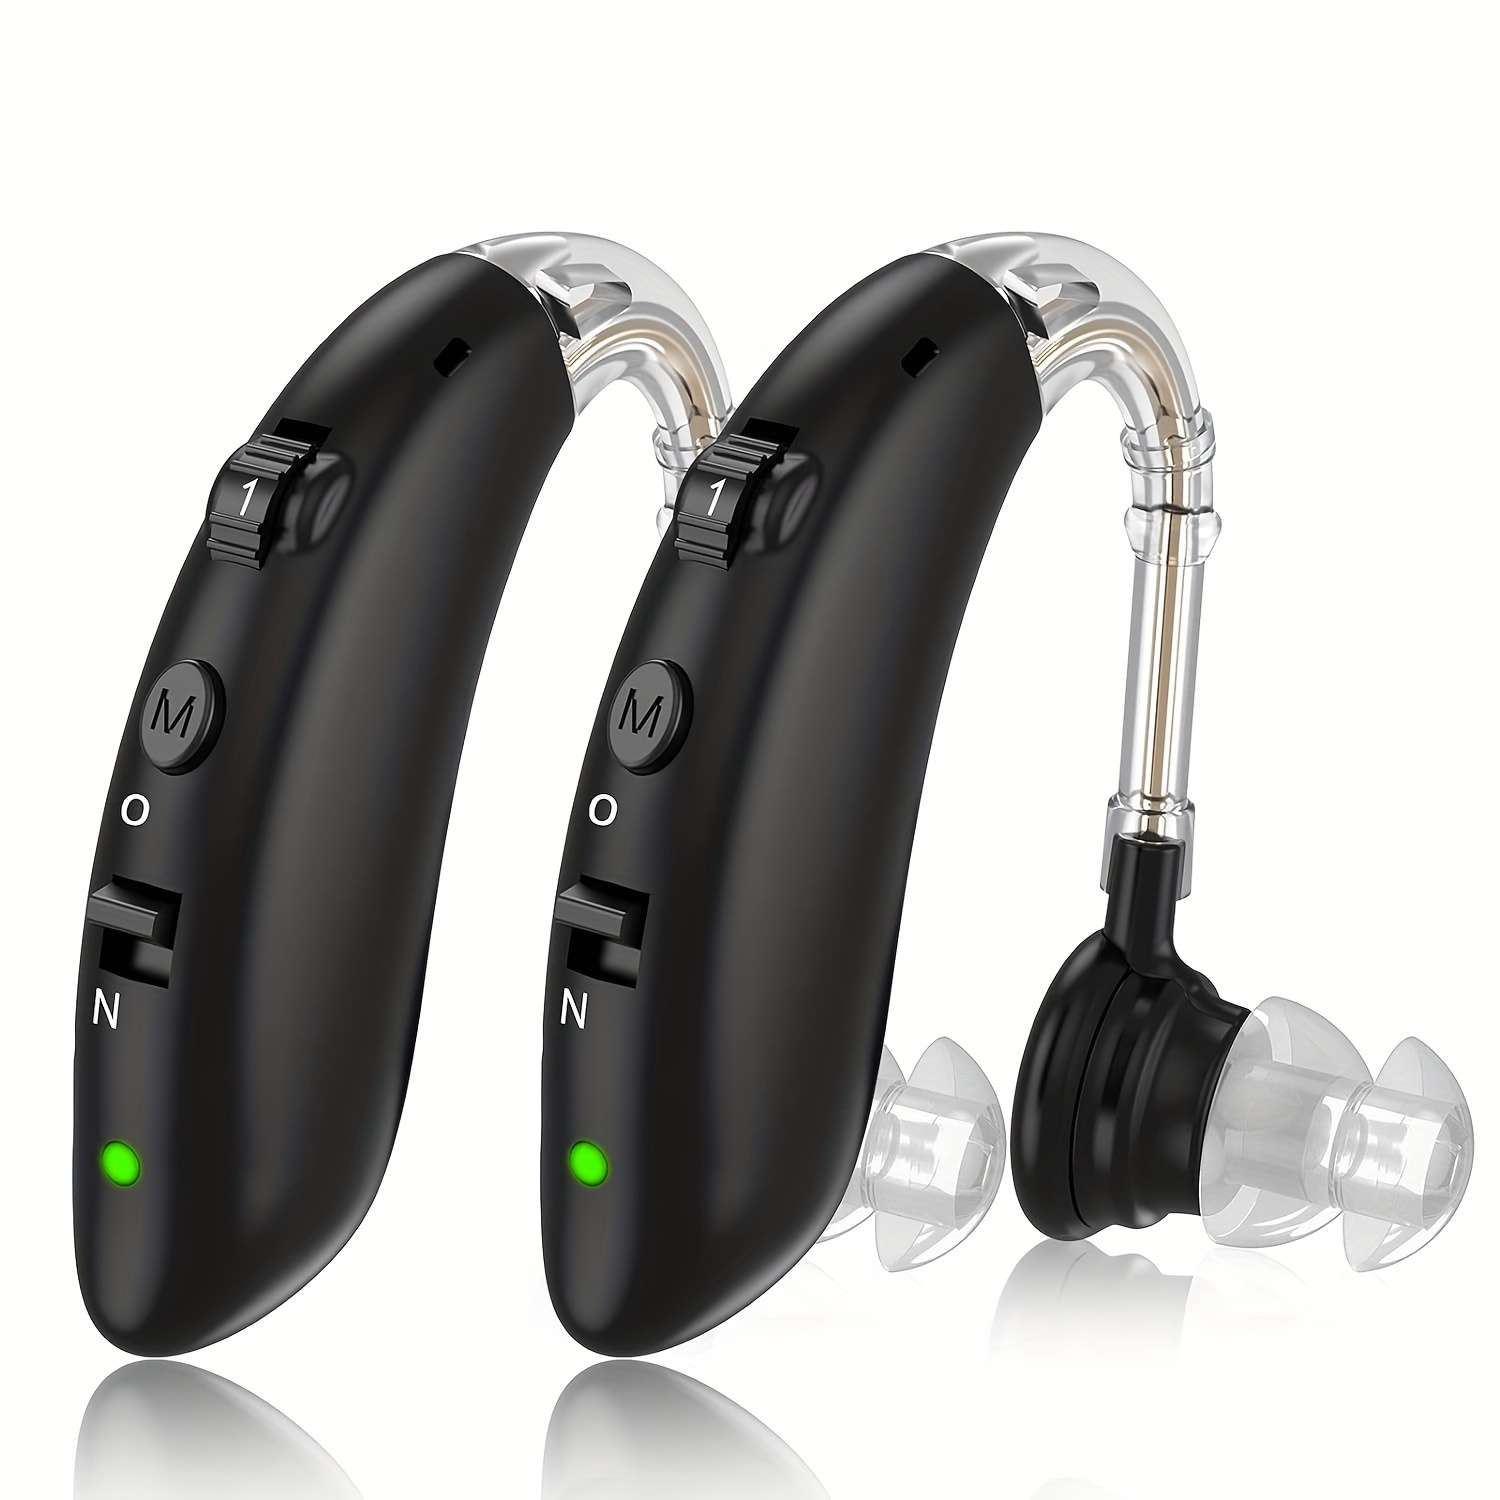 Audífonos recargables Mini audífono digital Amplificador de sonido  inalámbrico para sordera Dispositivo de escucha Auriculares de pérdida  severa